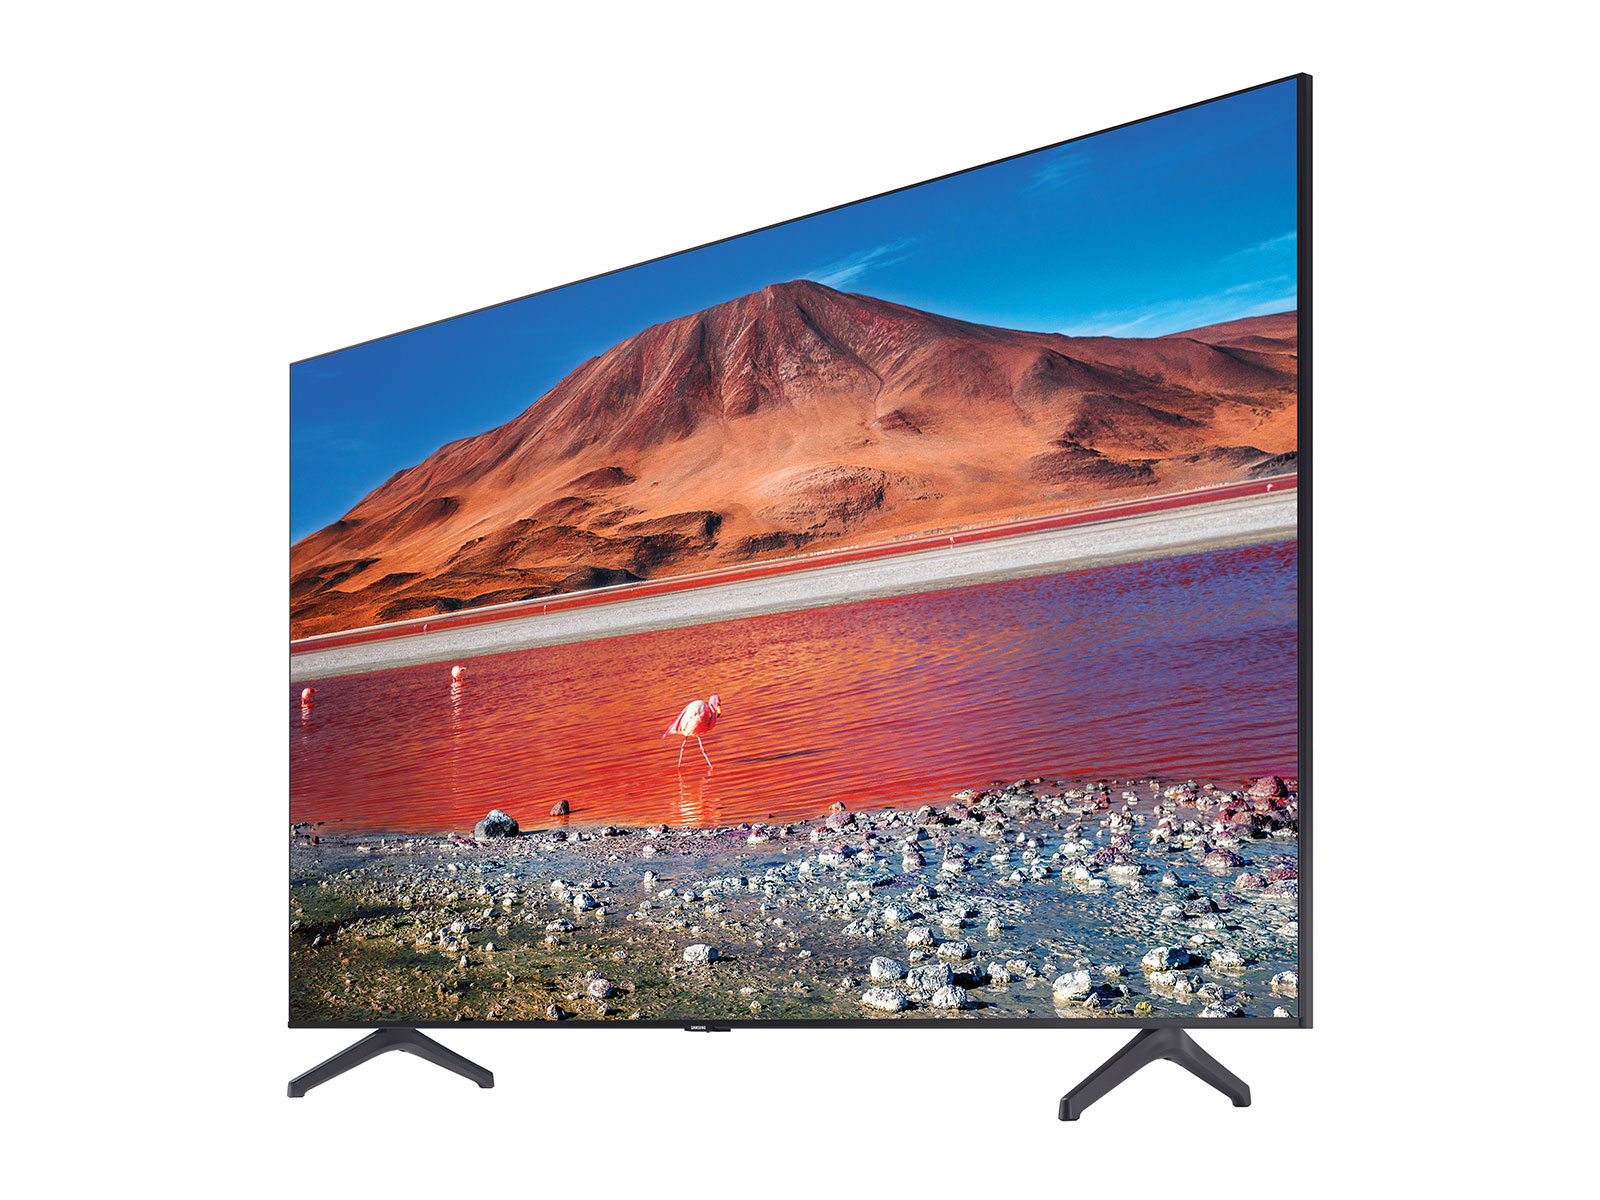 Samsung 50 Inch AU7002 Crystal UHD TV